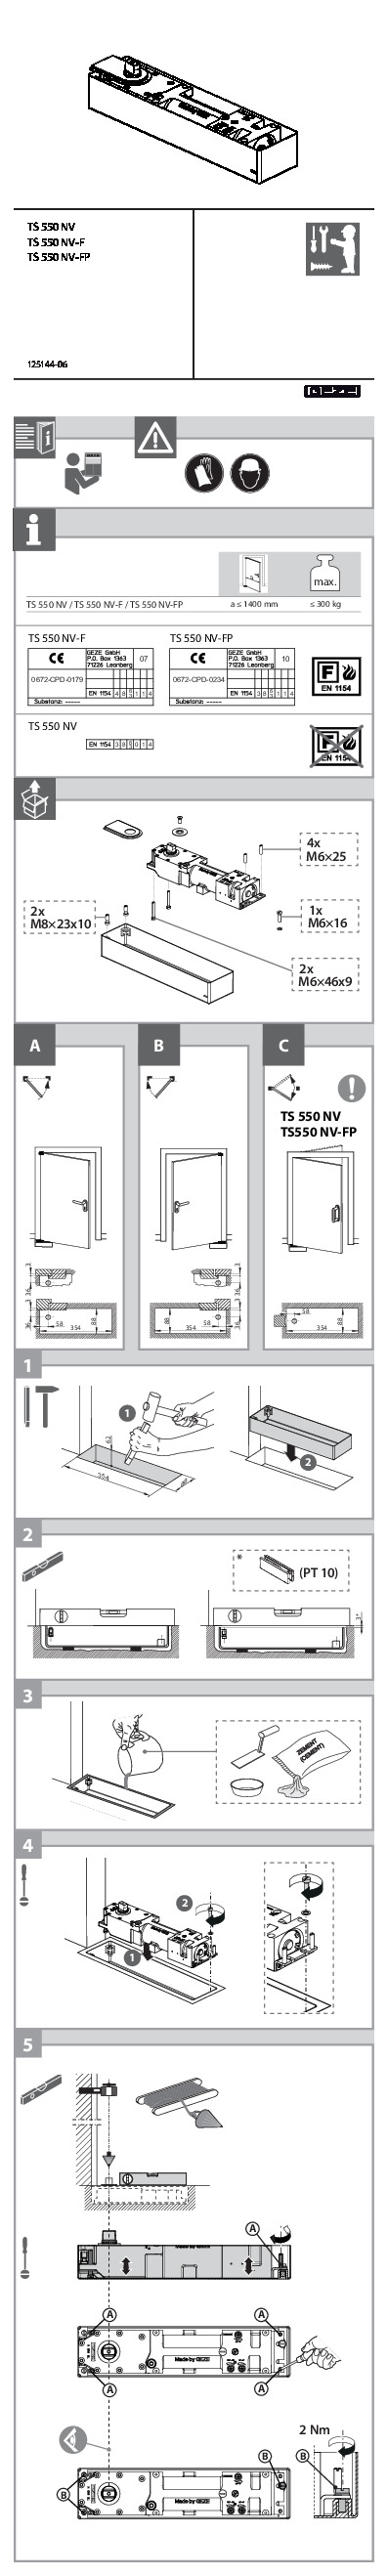 Door closer TS 550 NV assembly instructions